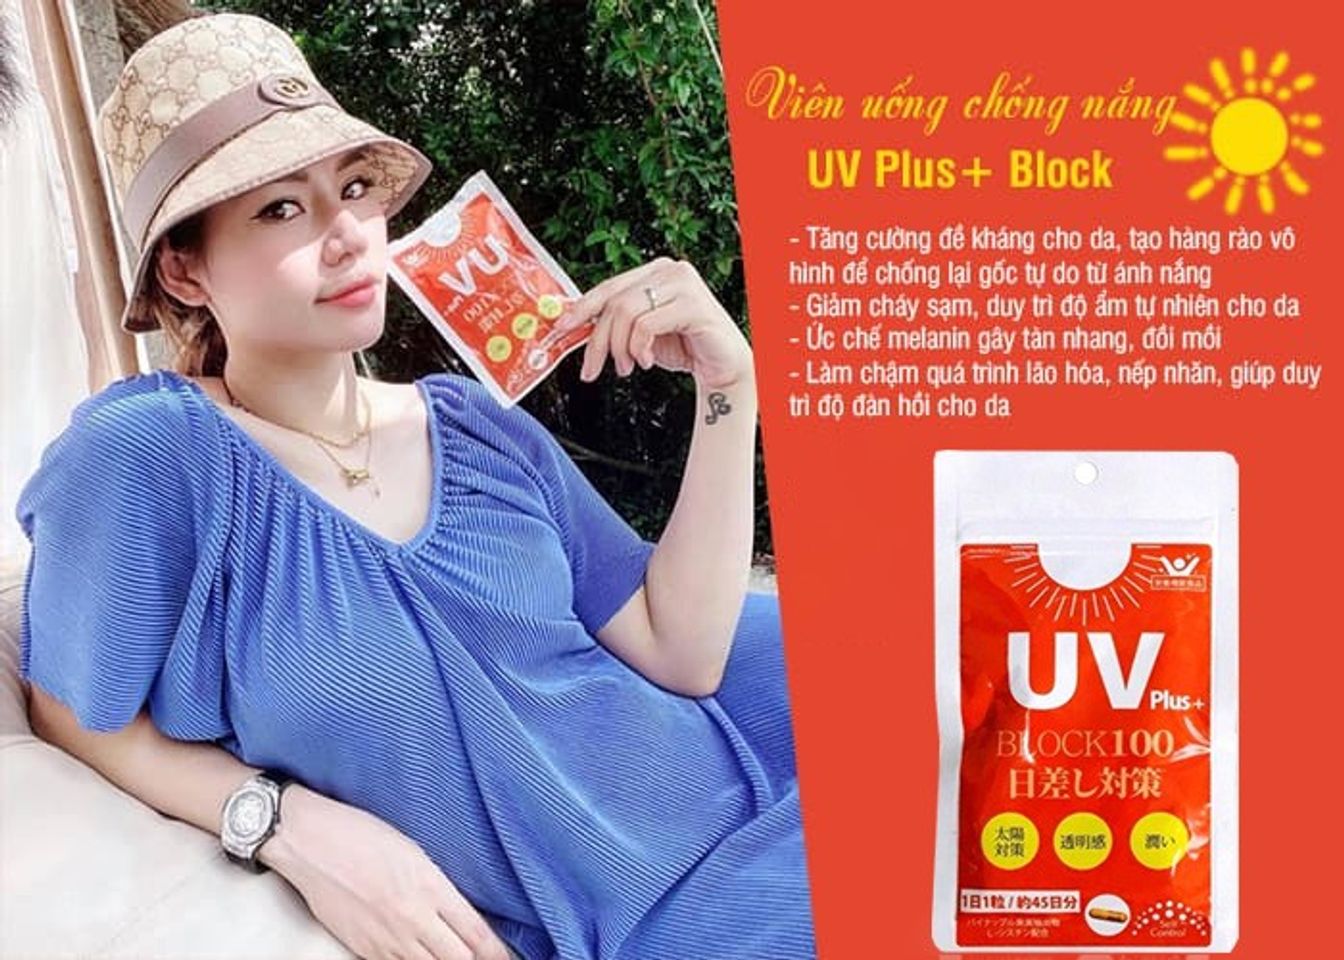 Viên uống chống nắng UV Plus+ Block 100 của Nhật gói 45 viên 3